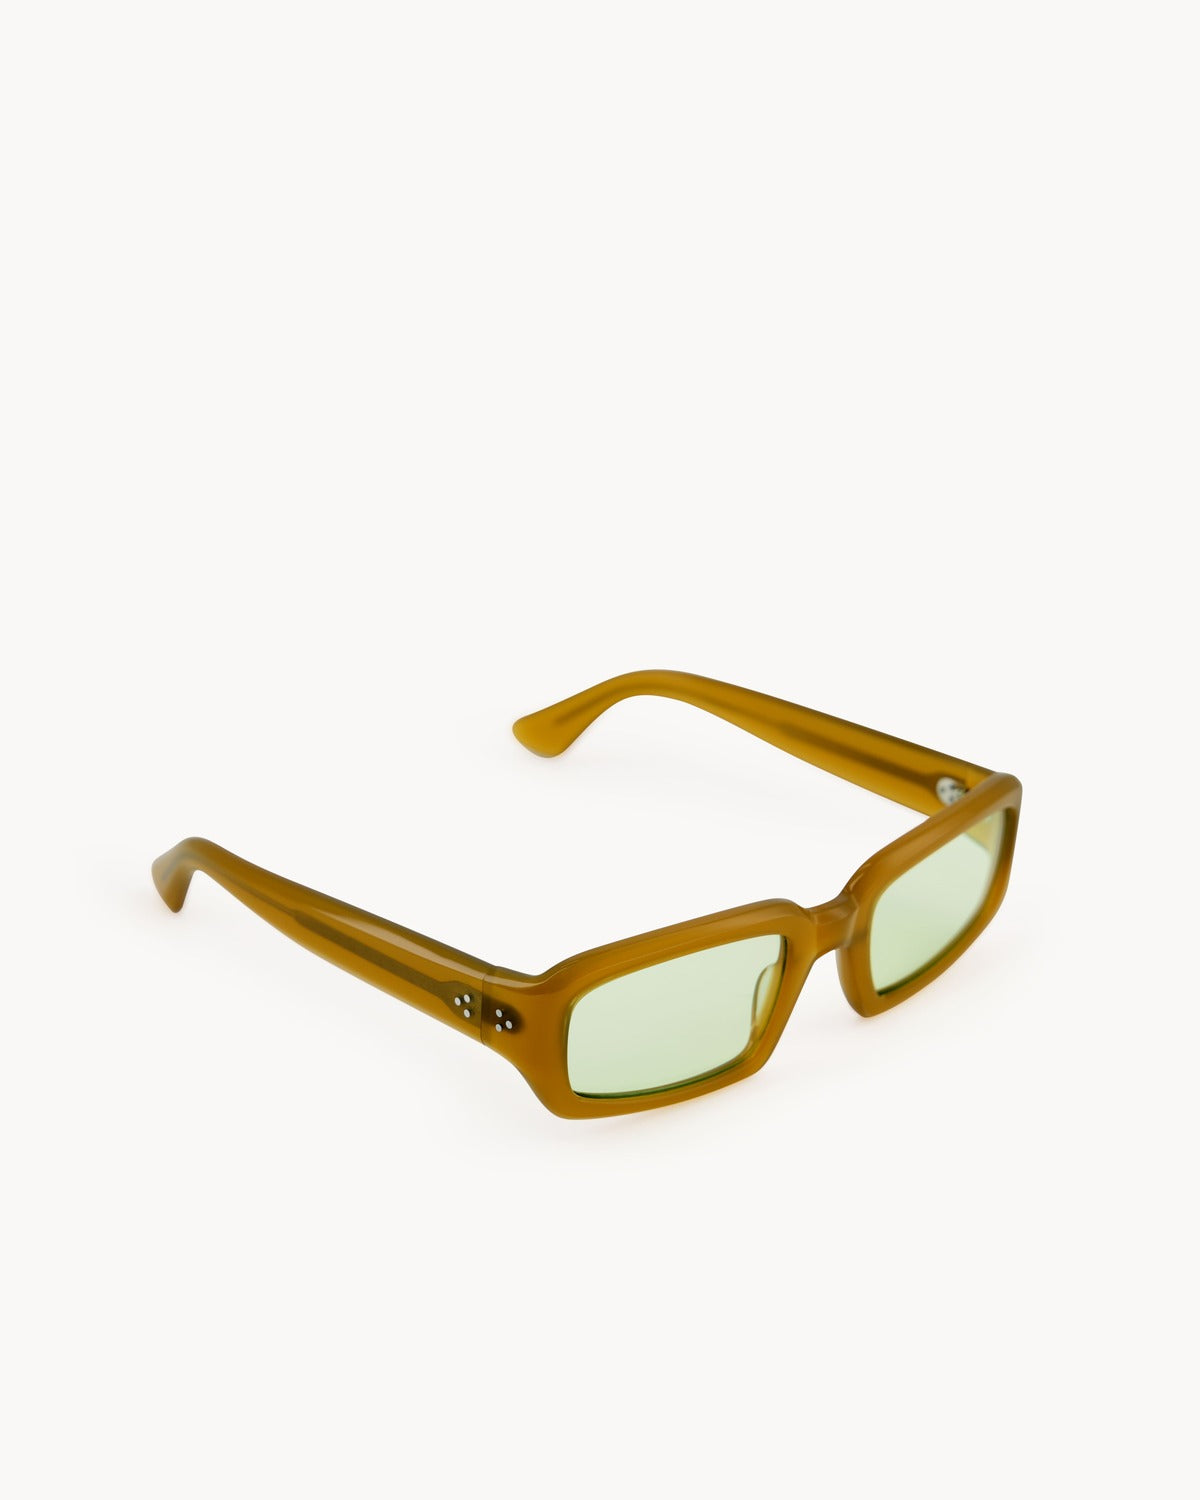 Port Tanger Mektoub Sunglasses in Yellow Ochra Acetate and Mint Lenses 2